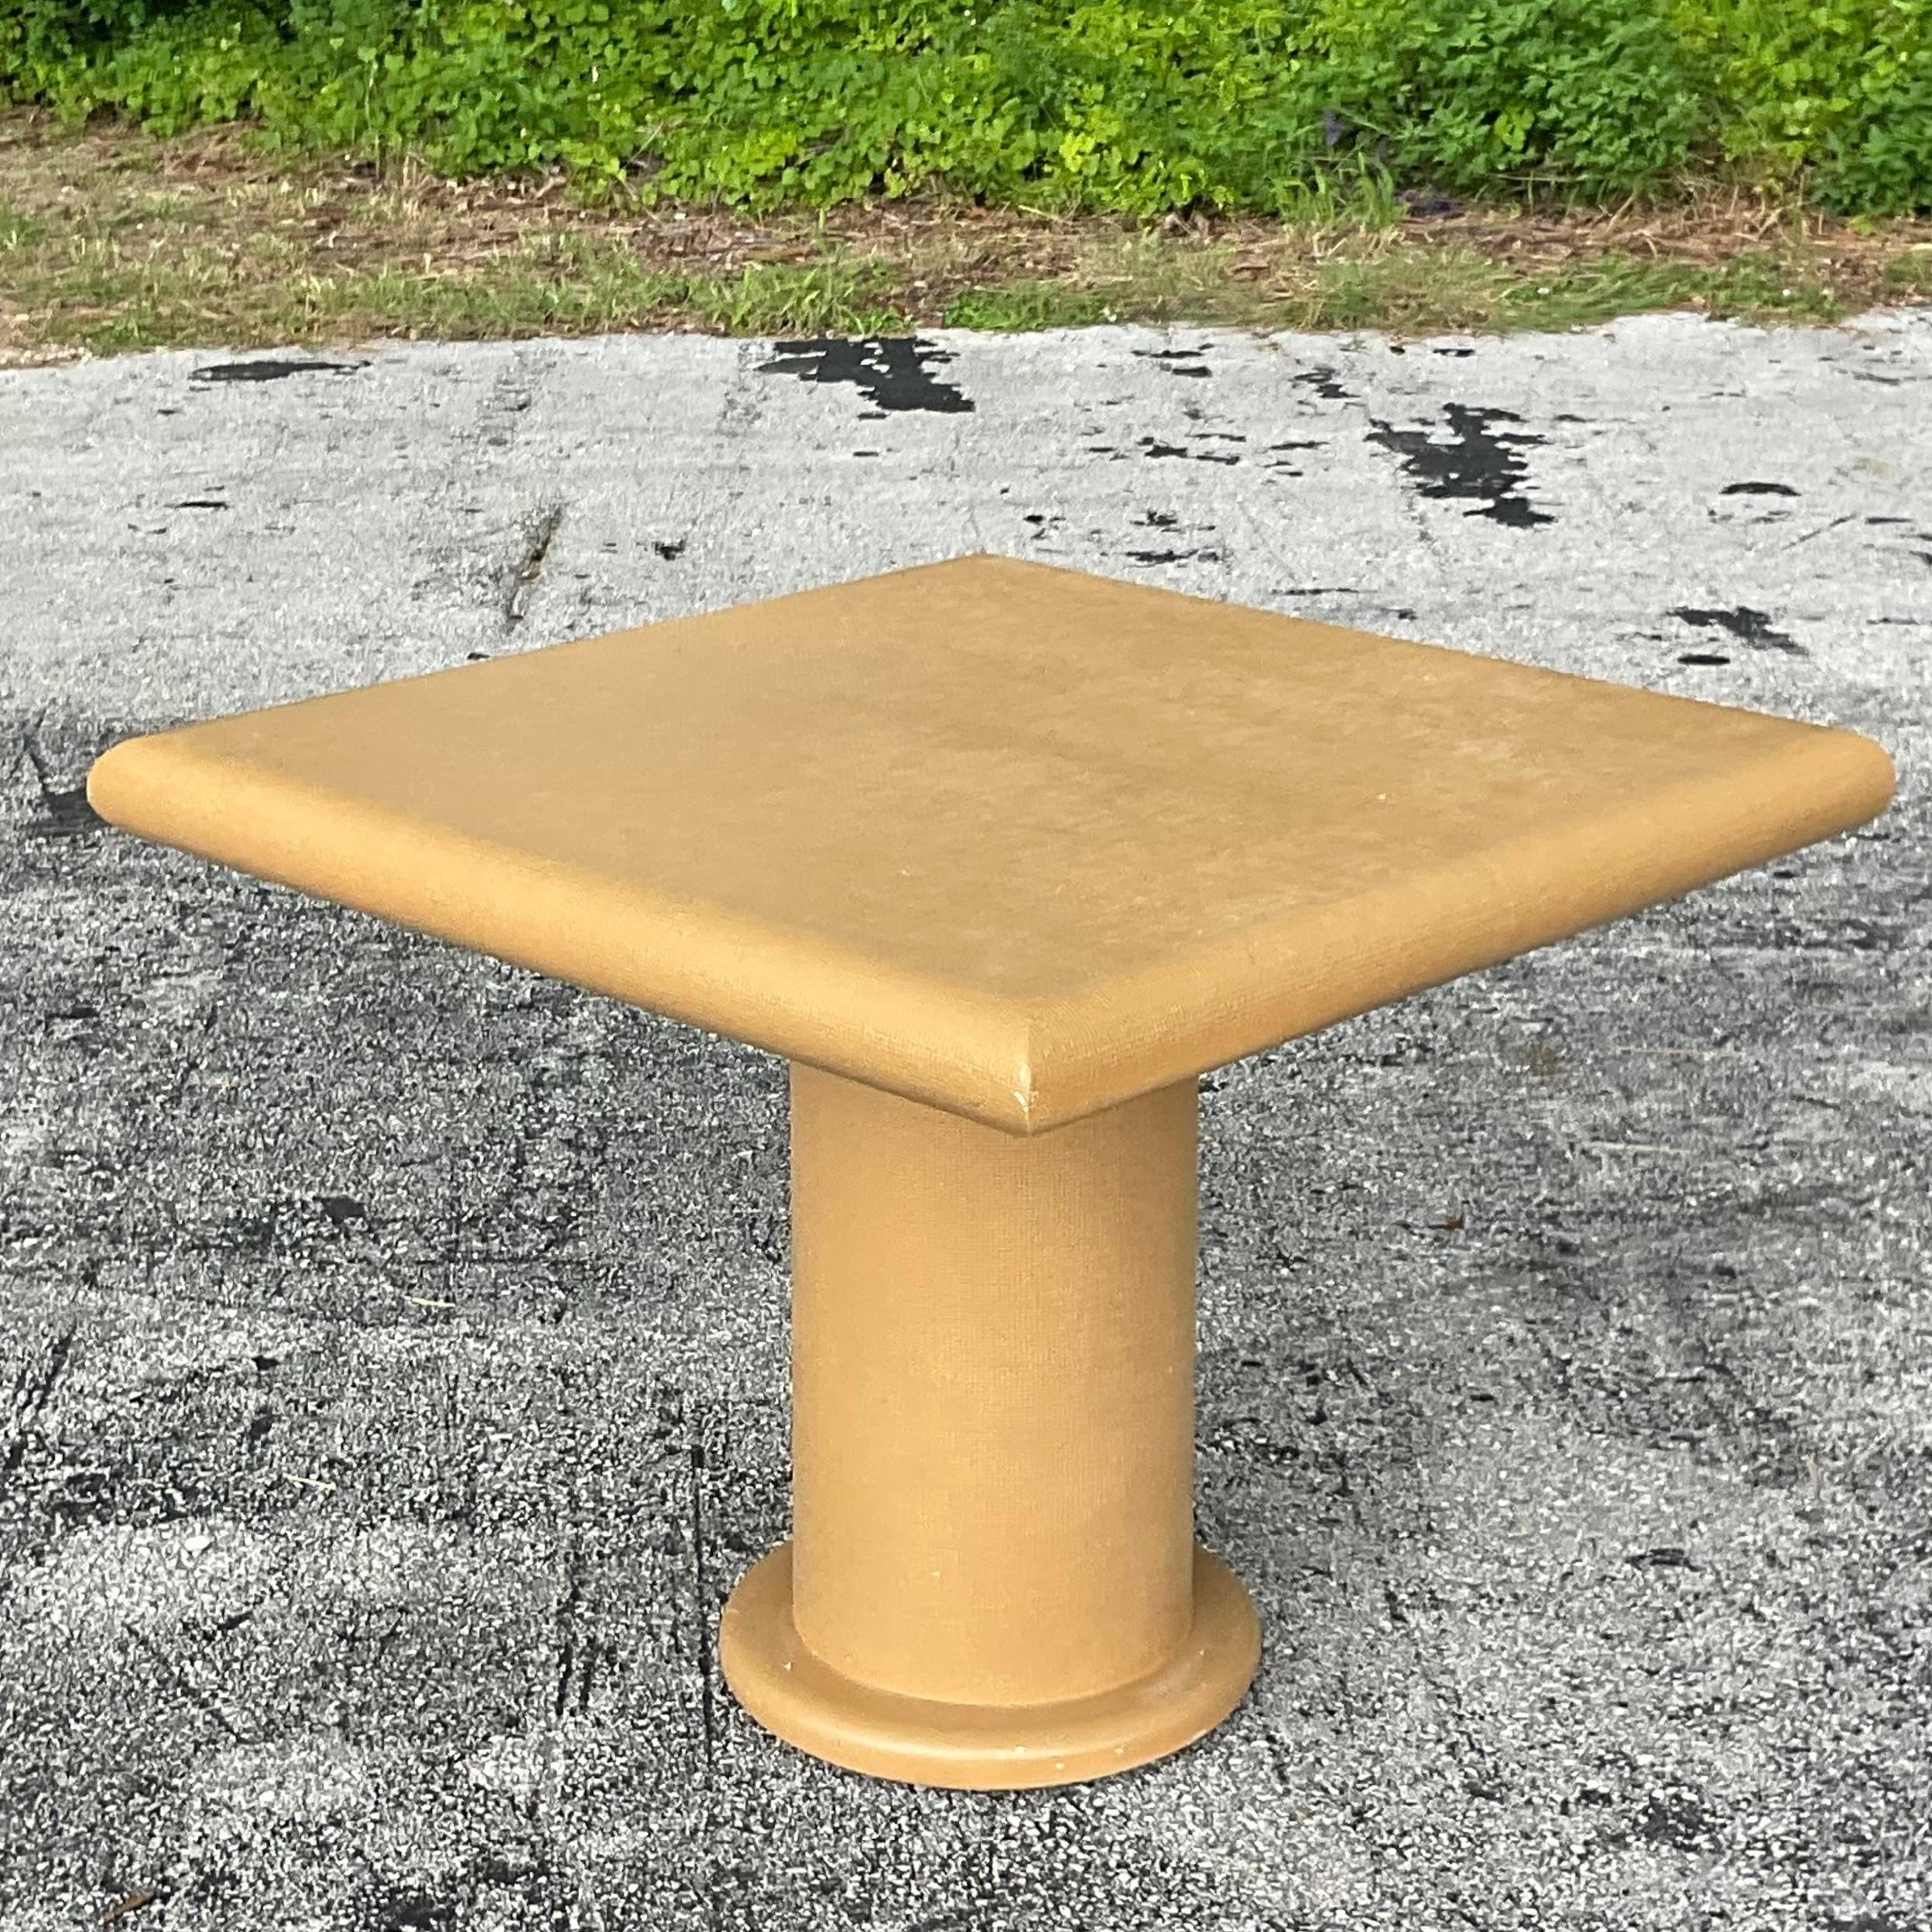 Ein fabelhafter Vintage Coastal Spieltisch. Ein schicker Tisch in Form eines Sockels, der mit Gras bedeckt ist. Die Stiernase unterstreicht den Look. Wurde aus einem Nachlass in Miami erworben.